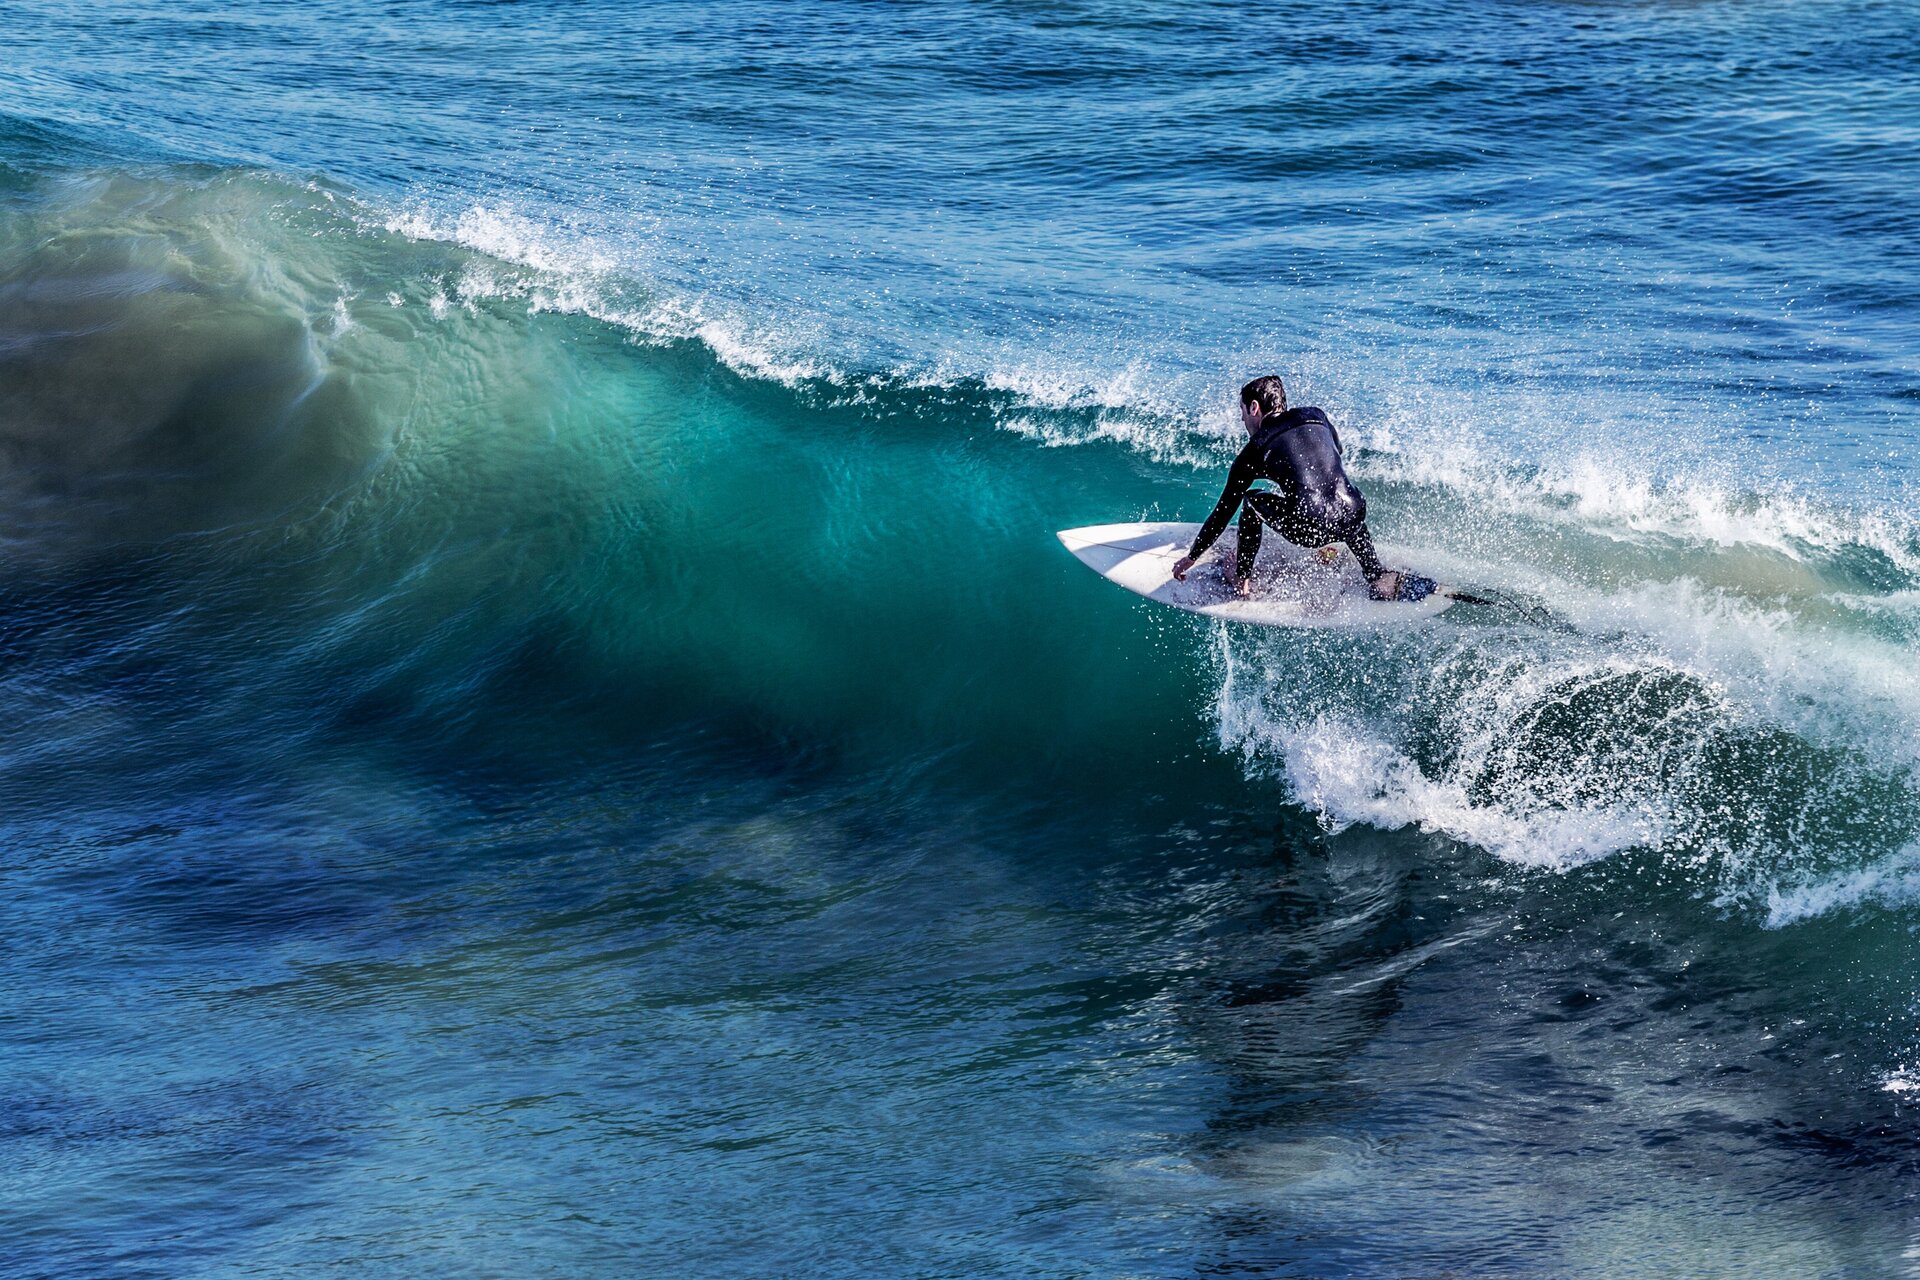 Rys. a. Na zdjęciu widoczny jest fragment morza, przez które przemieszcza się fala o dużej wysokości. Na grzbiecie fali płynie osoba na desce surfingowej.